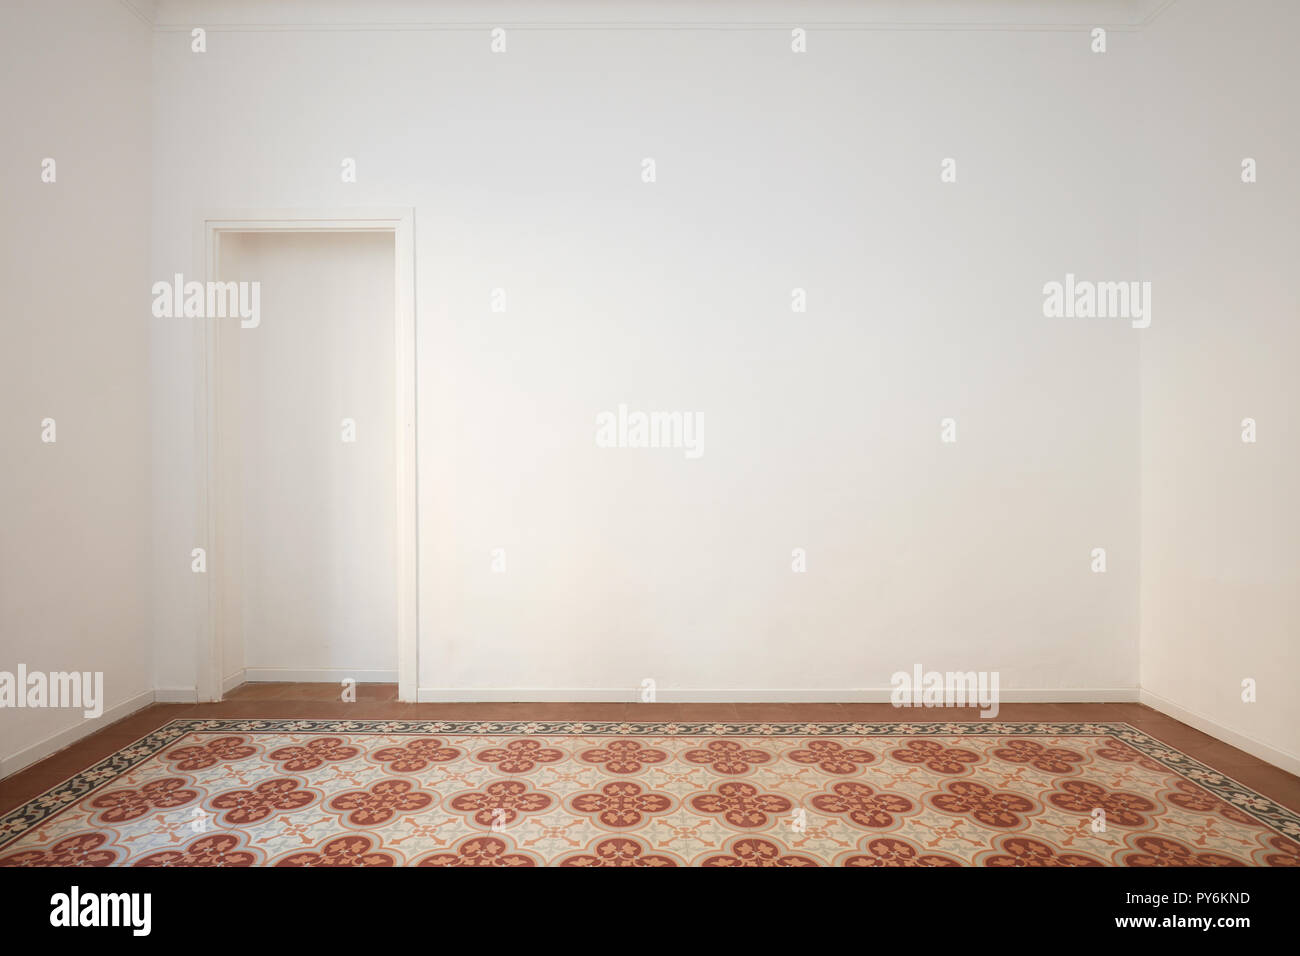 Blanc, mur blanc avec niche et décorées de carrelage dans un intérieur rénové Banque D'Images